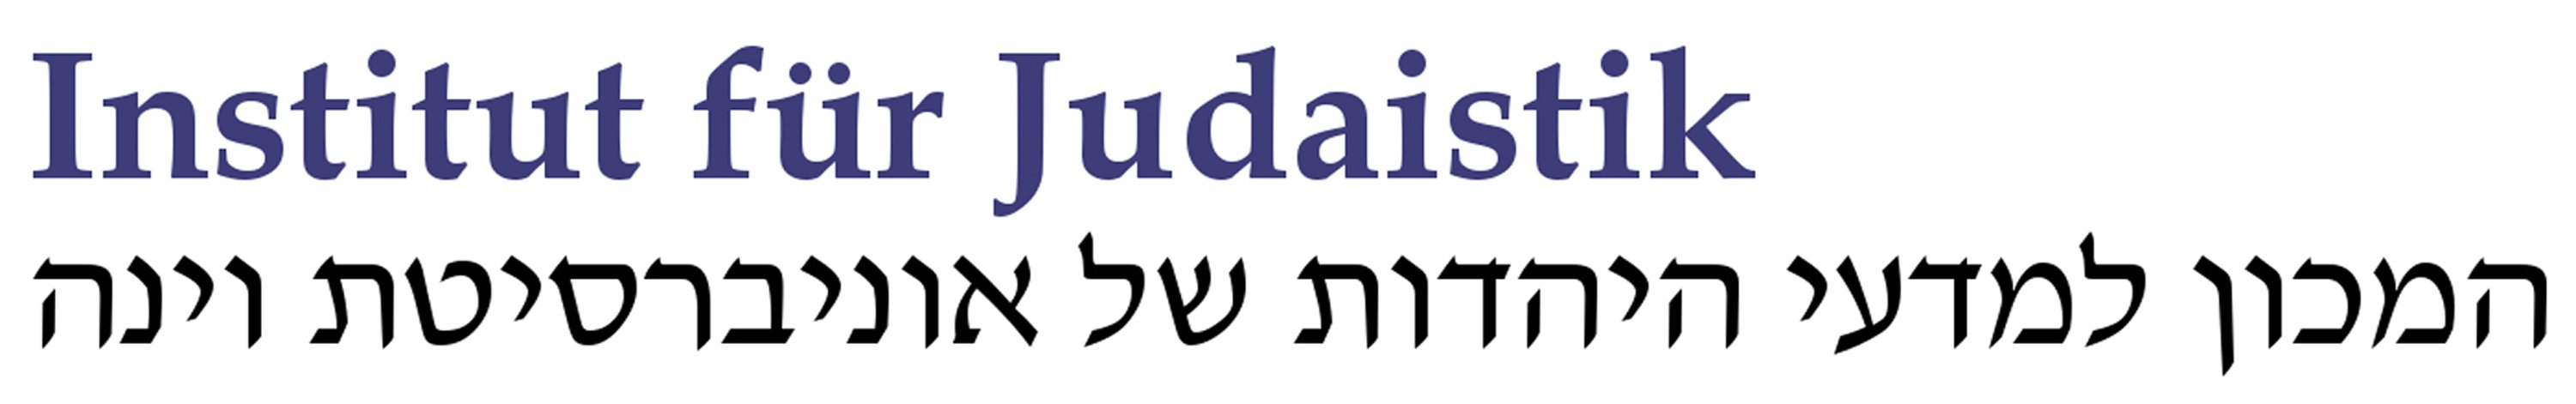 Logo Institut für Judaistik Wien